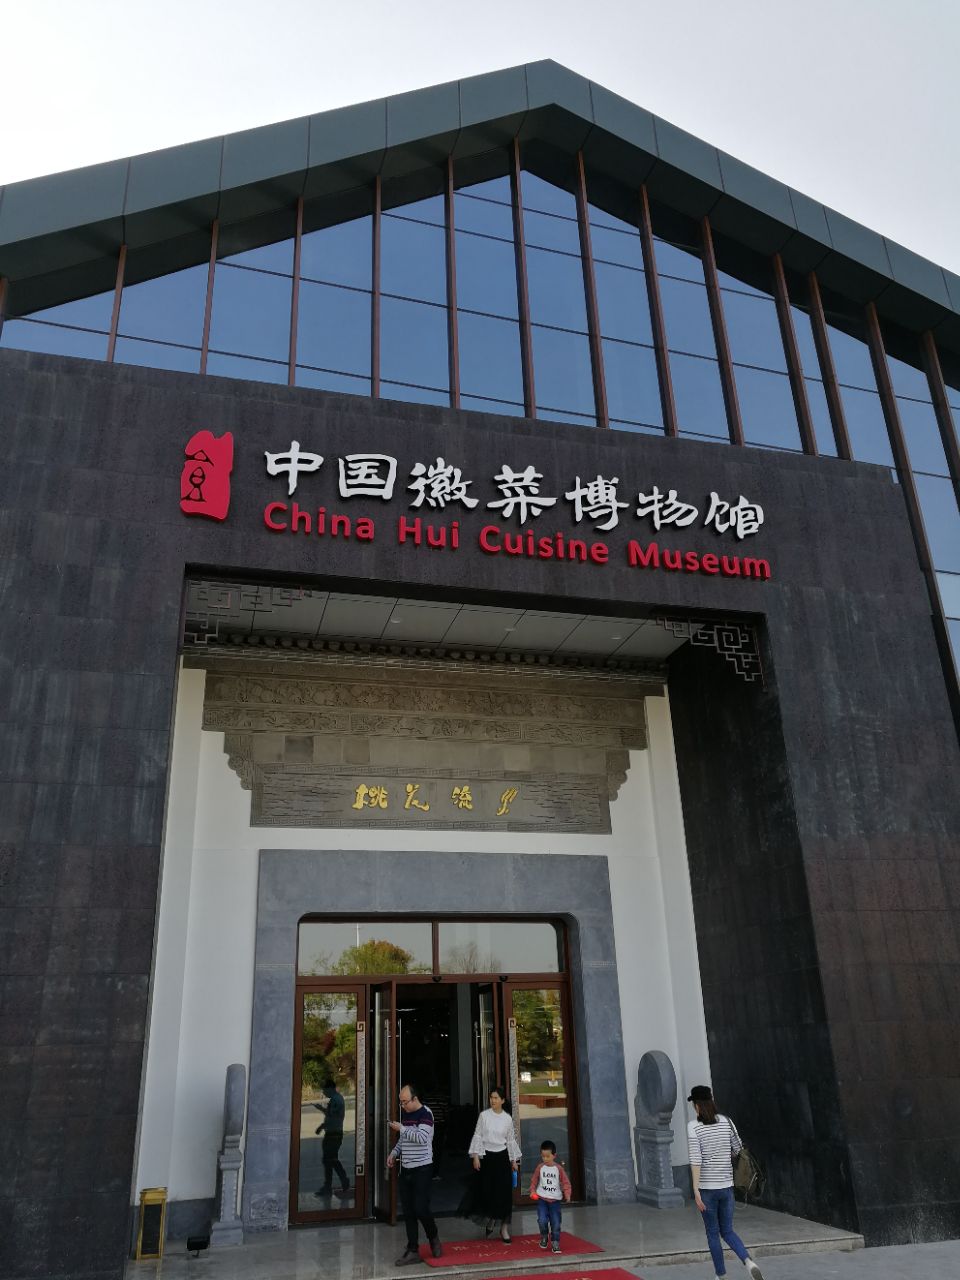 参观中国徽菜博物馆,一下子就被吸引住了.